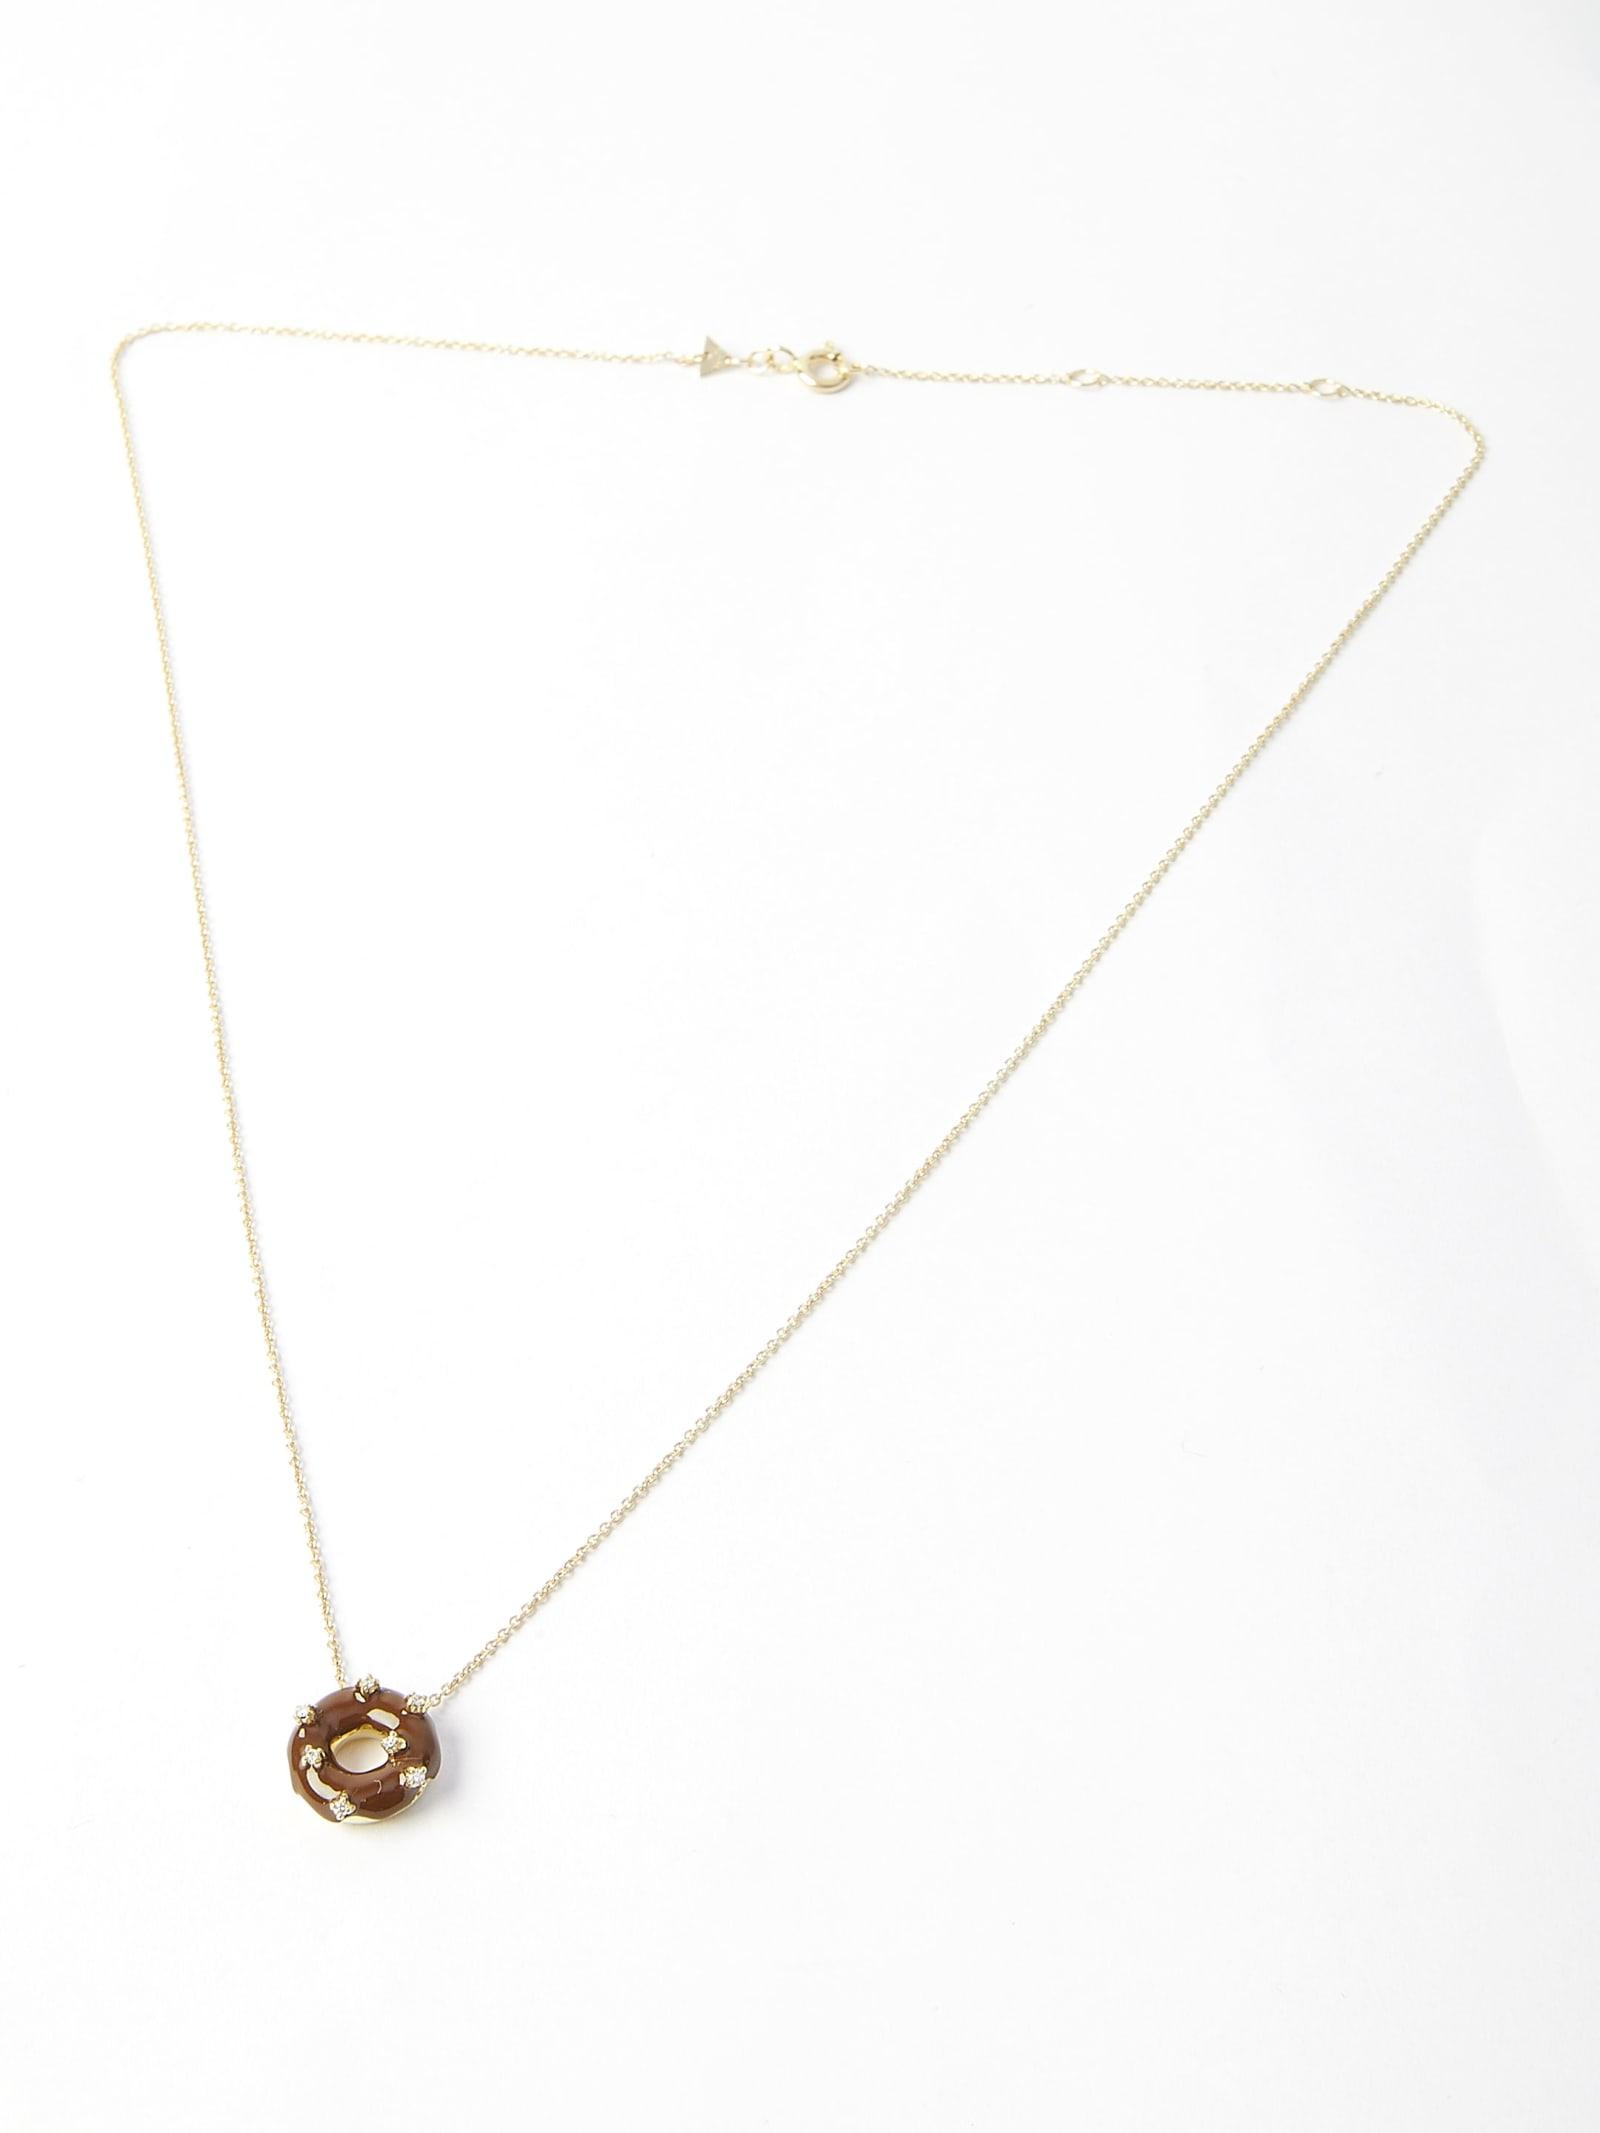 Corazon Brillante Gold Necklace - ALIITA